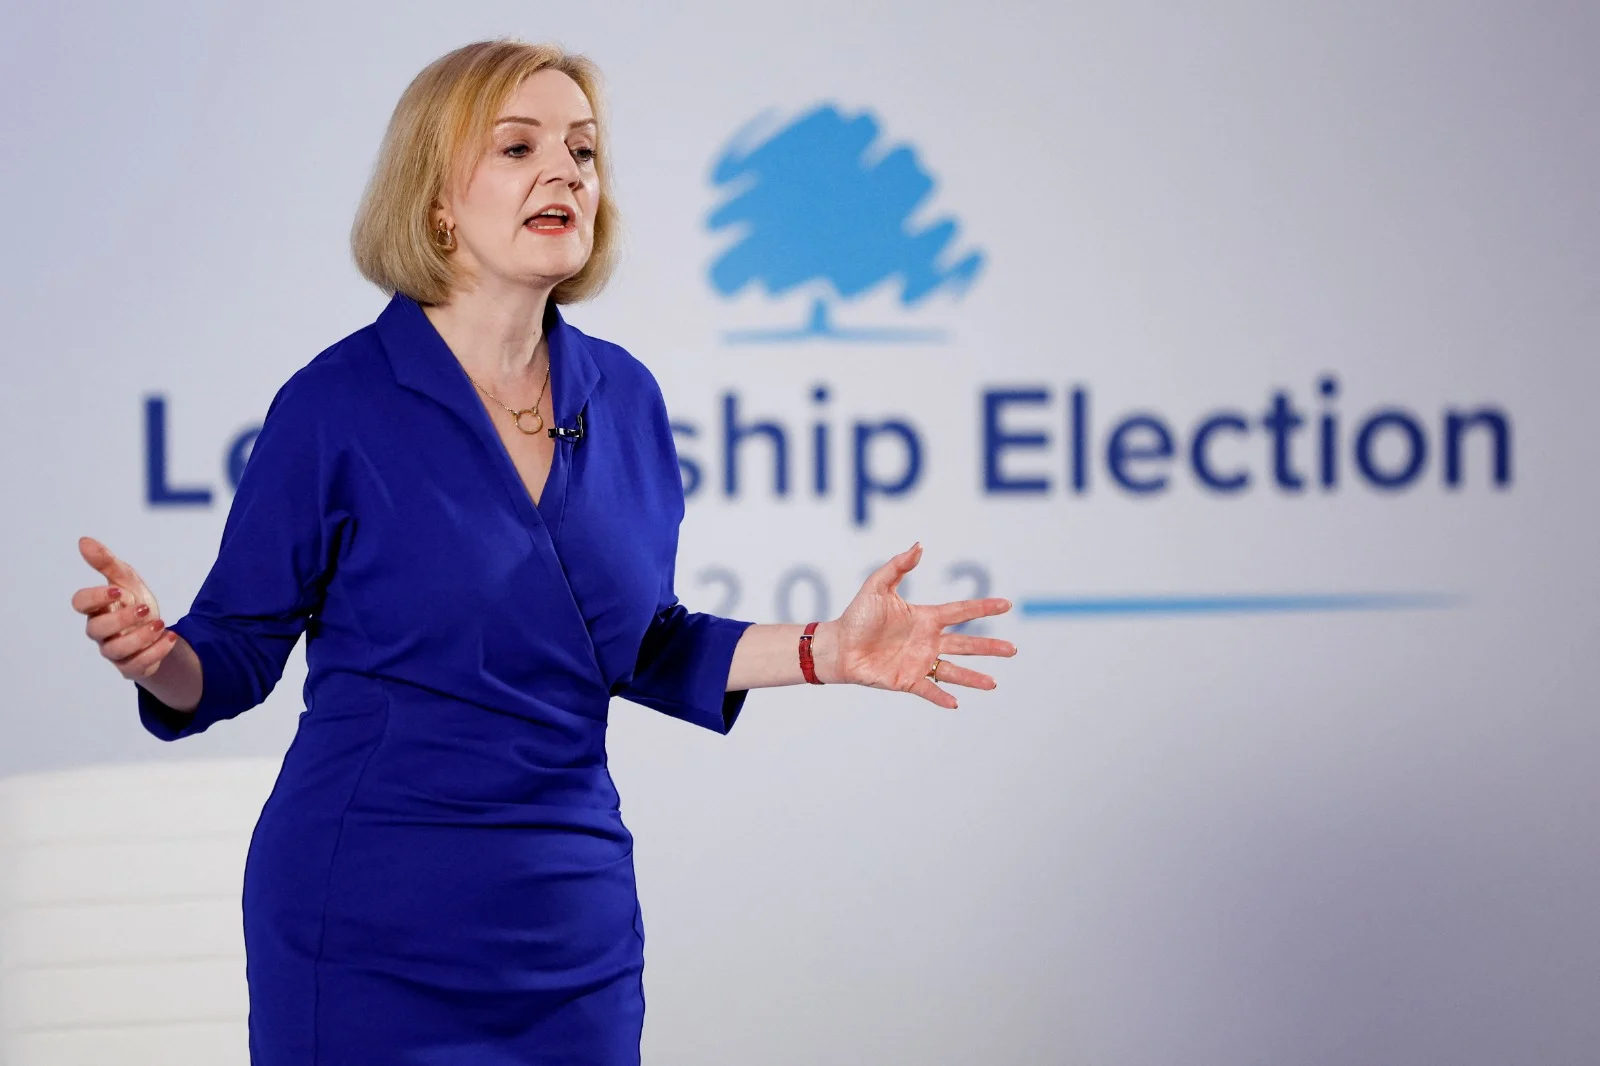 ליז טראס, שרת החוץ הבריטית והמועמדת מטעם המפלגה השמרנית להחליף את רה''מ ג'ונסון